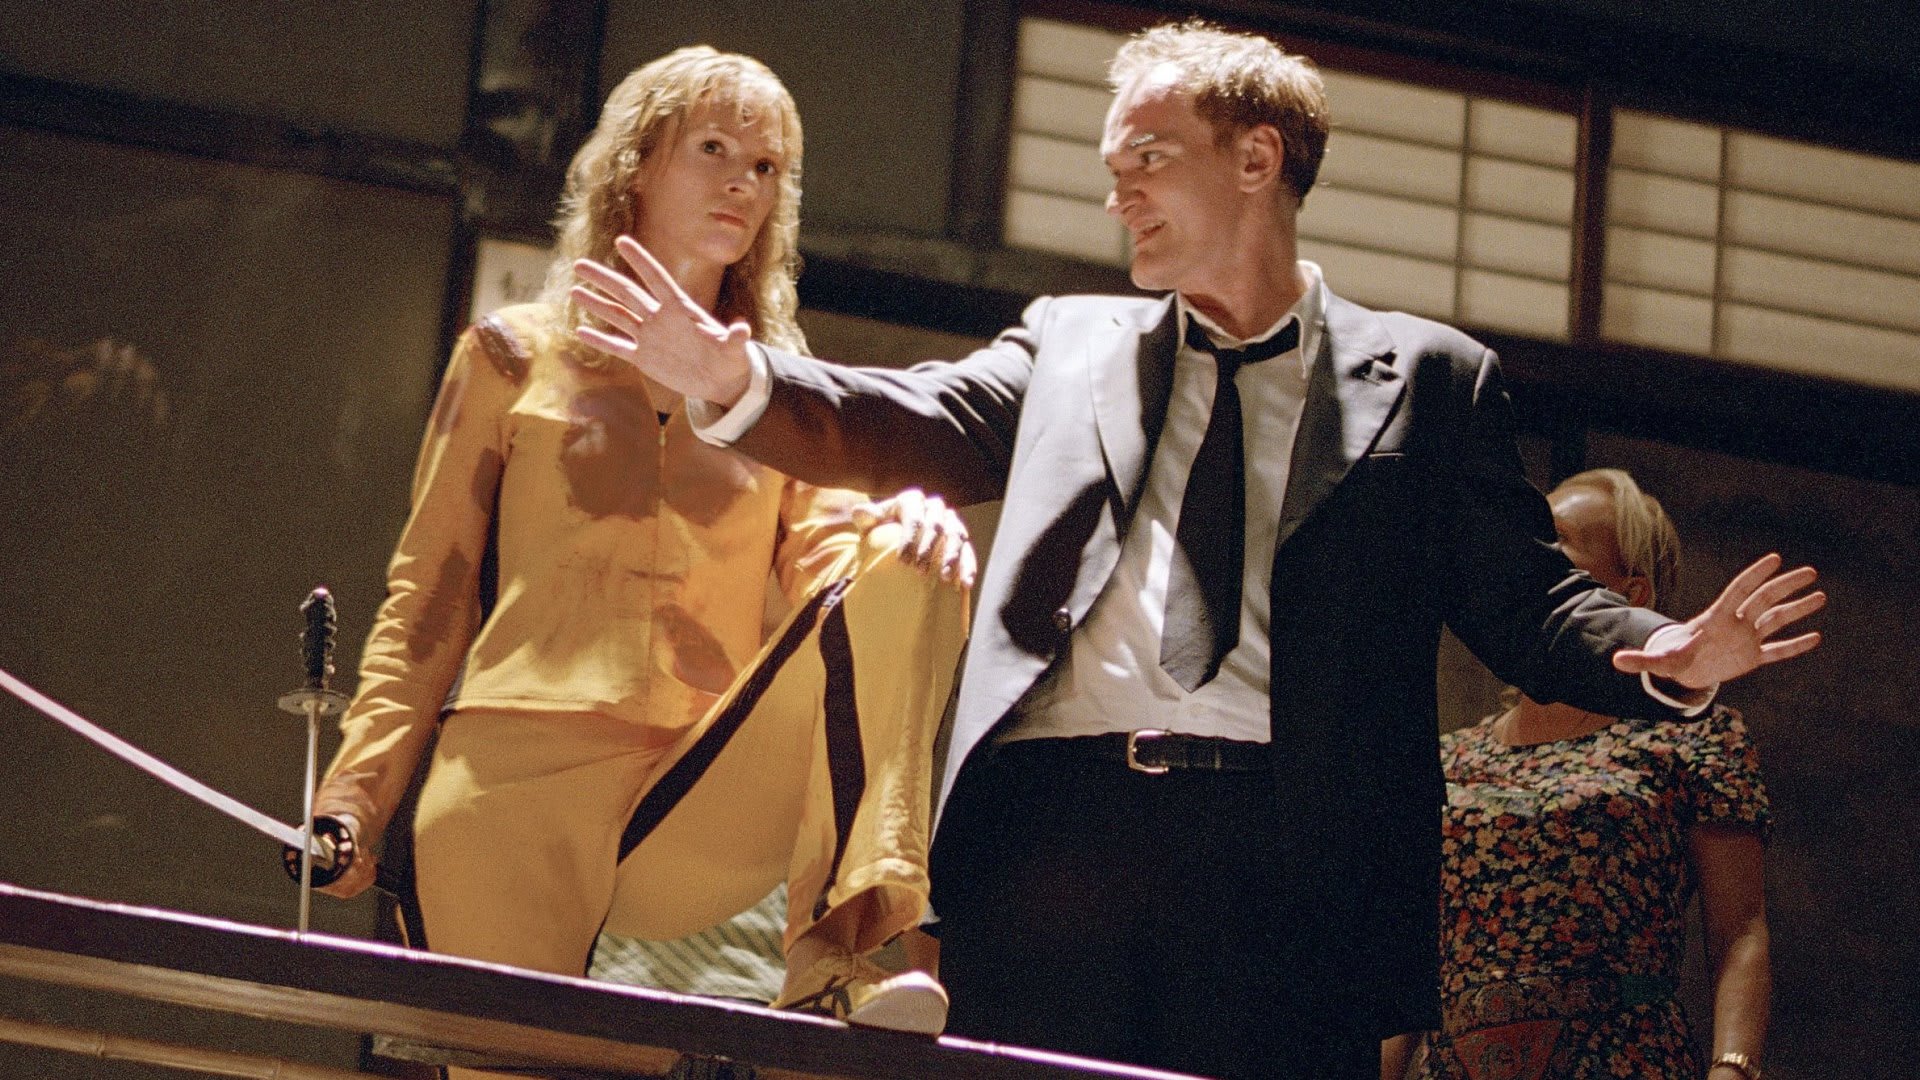 Kill Bill - Quentin Tarantino